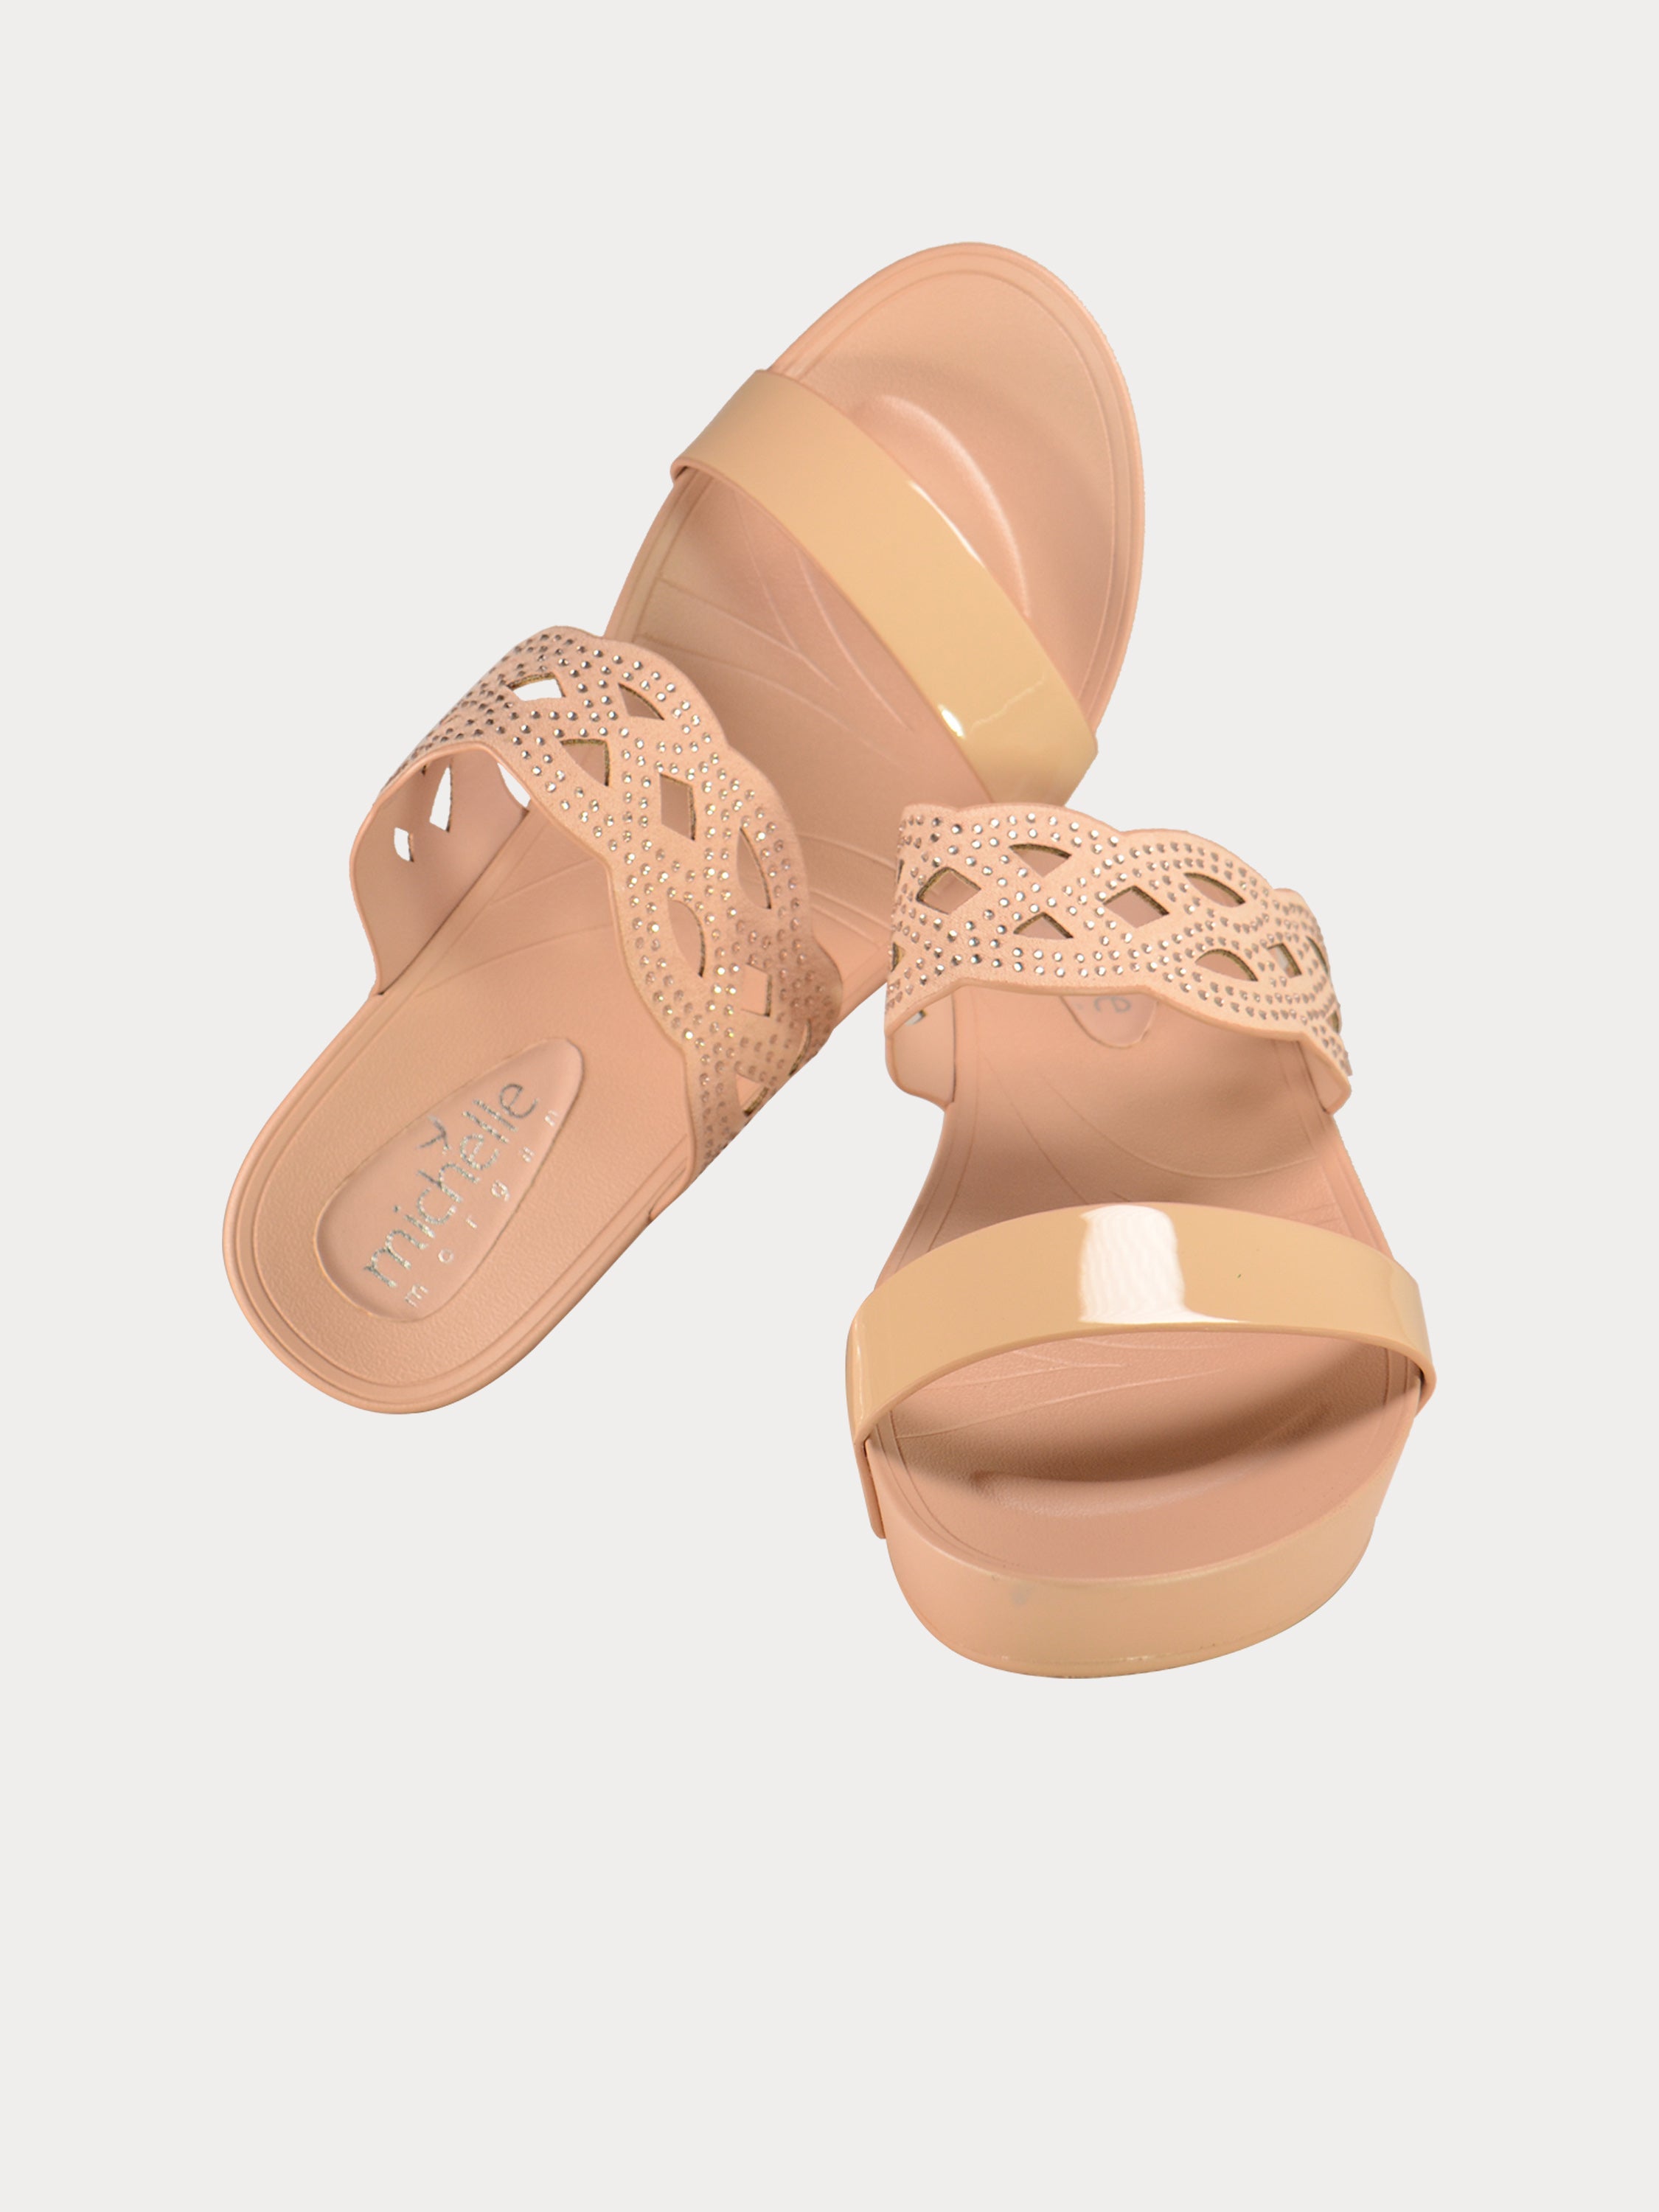 Michelle Morgan Women's Platform Sandals #color_Beige